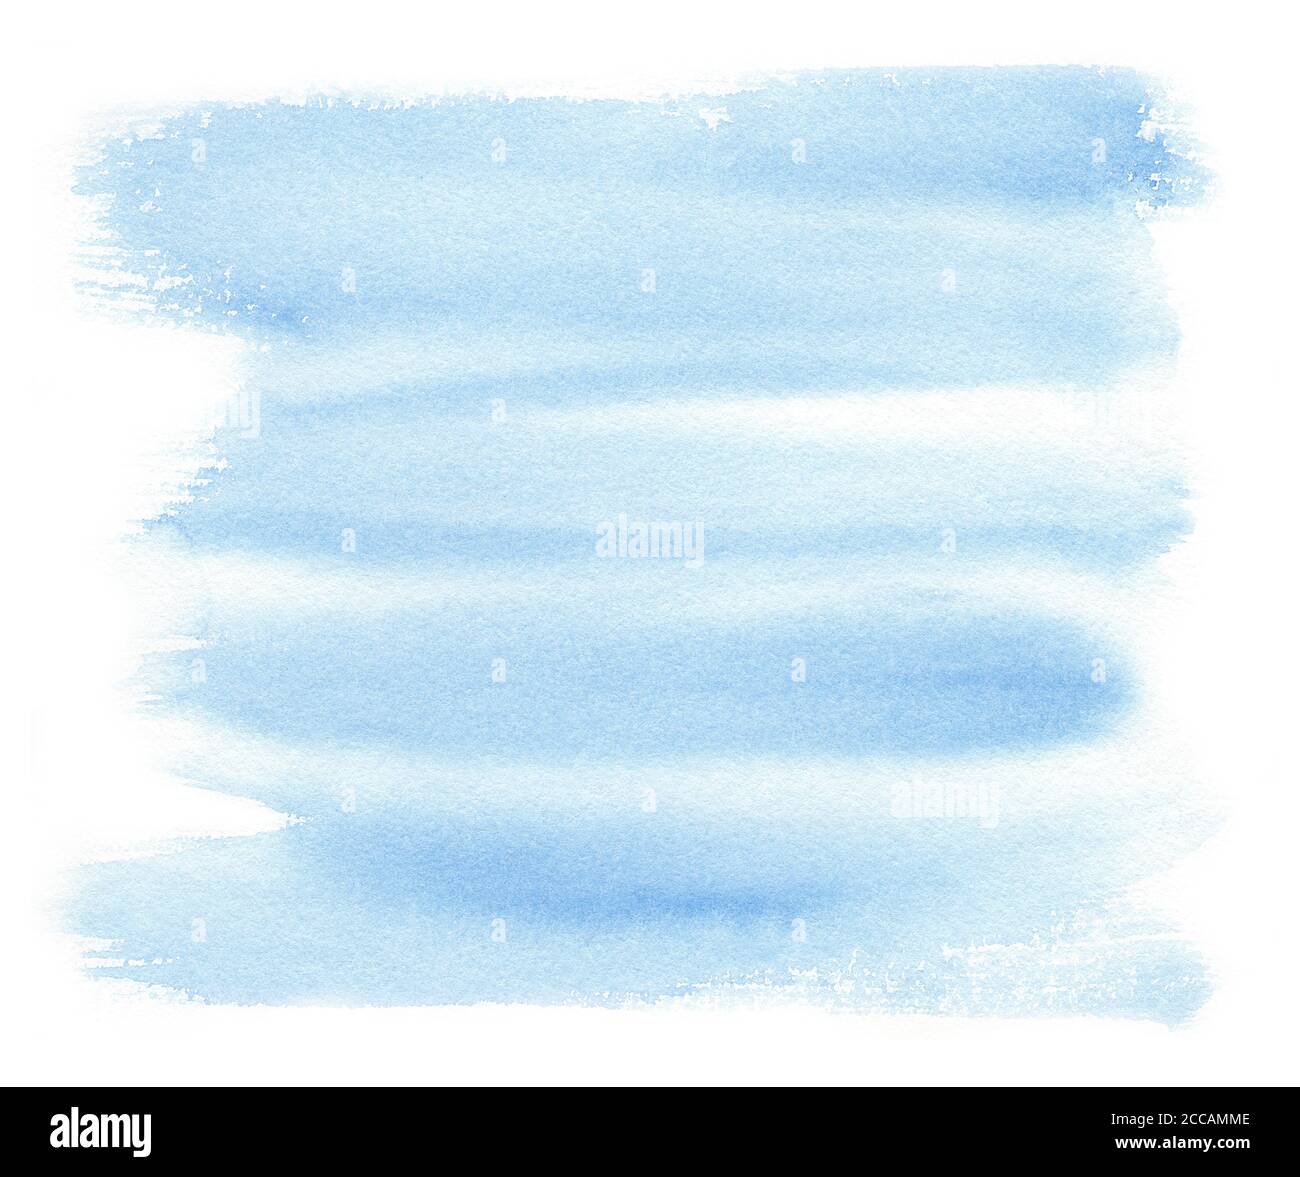 Bandes d'aquarelles bleues isolées sur papier blanc texturé. Illustration pour la couverture de conception, étiquette. Illustration de mariage Banque D'Images